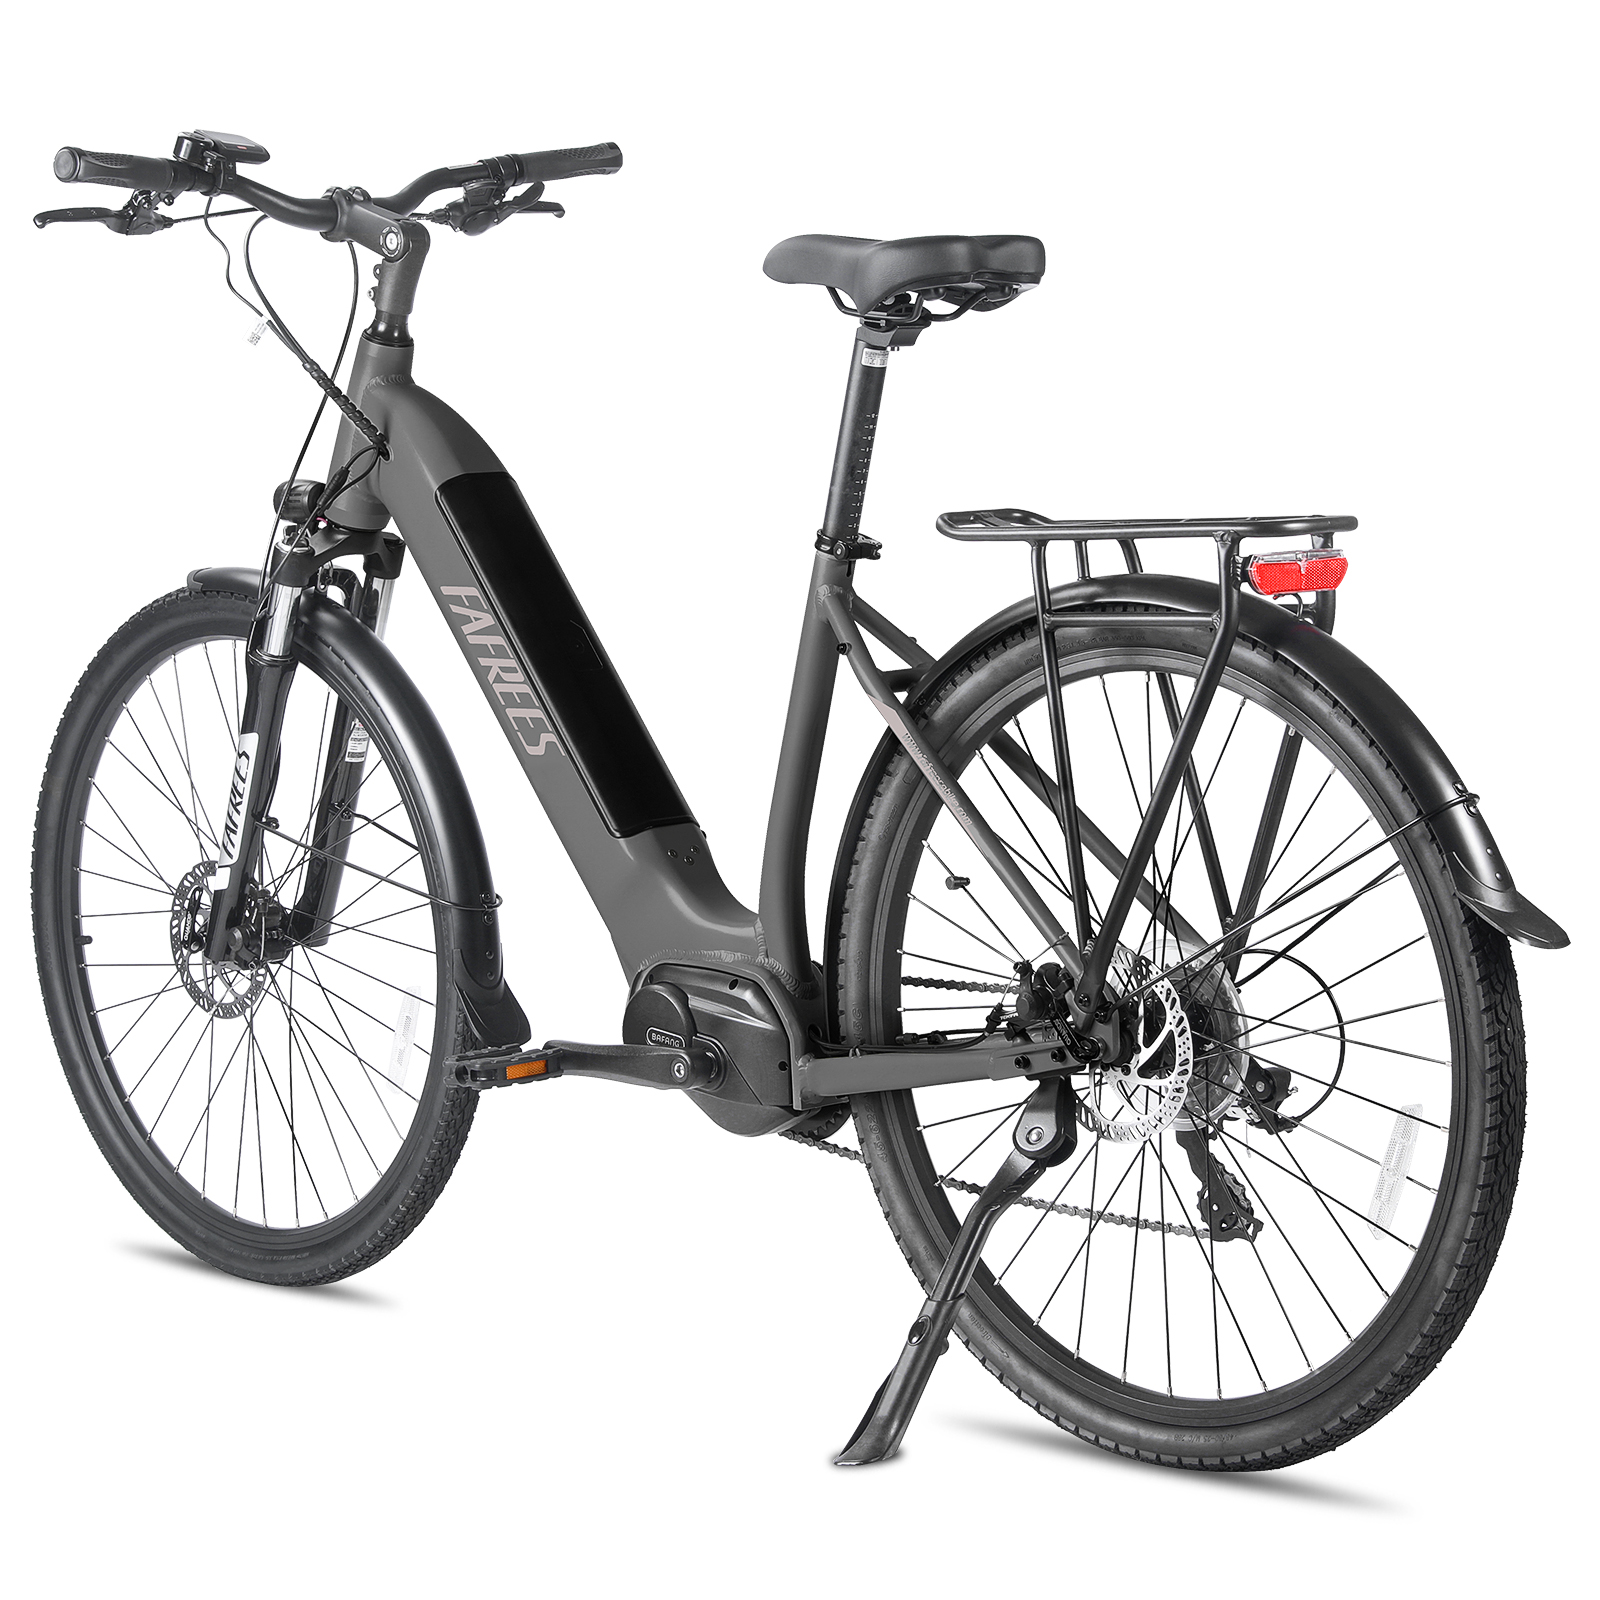 E-bike (Laufradgröße: Terrain 20 (ATB) FAFREES All Bike grau) Zoll, Unisex-Rad,